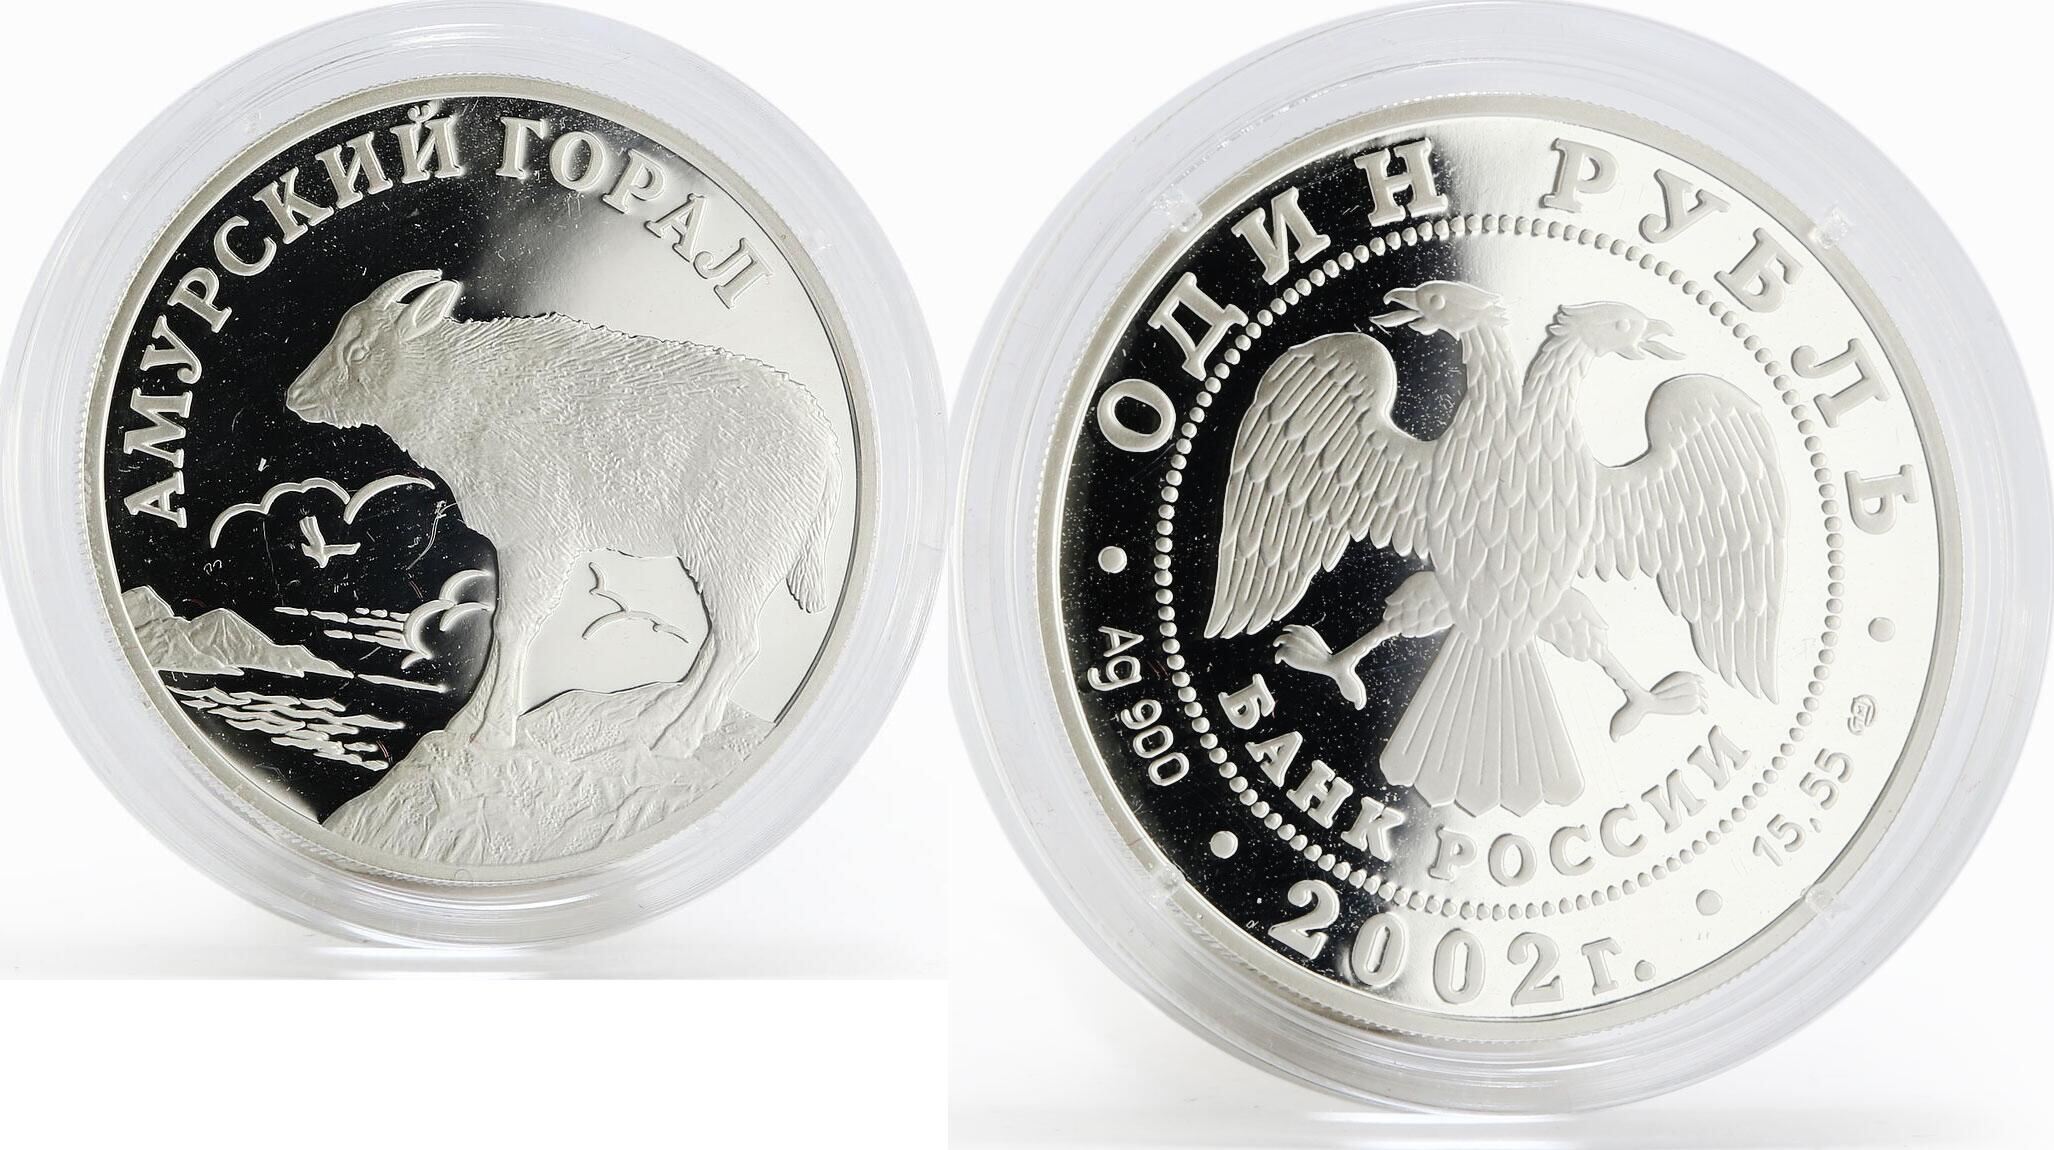 Монета серебро Пеликан. Серебряные монеты 1 рубль Австралии. Гвина монета серебро. Брат 25 монеты серебро. 3 рубля екатеринбург